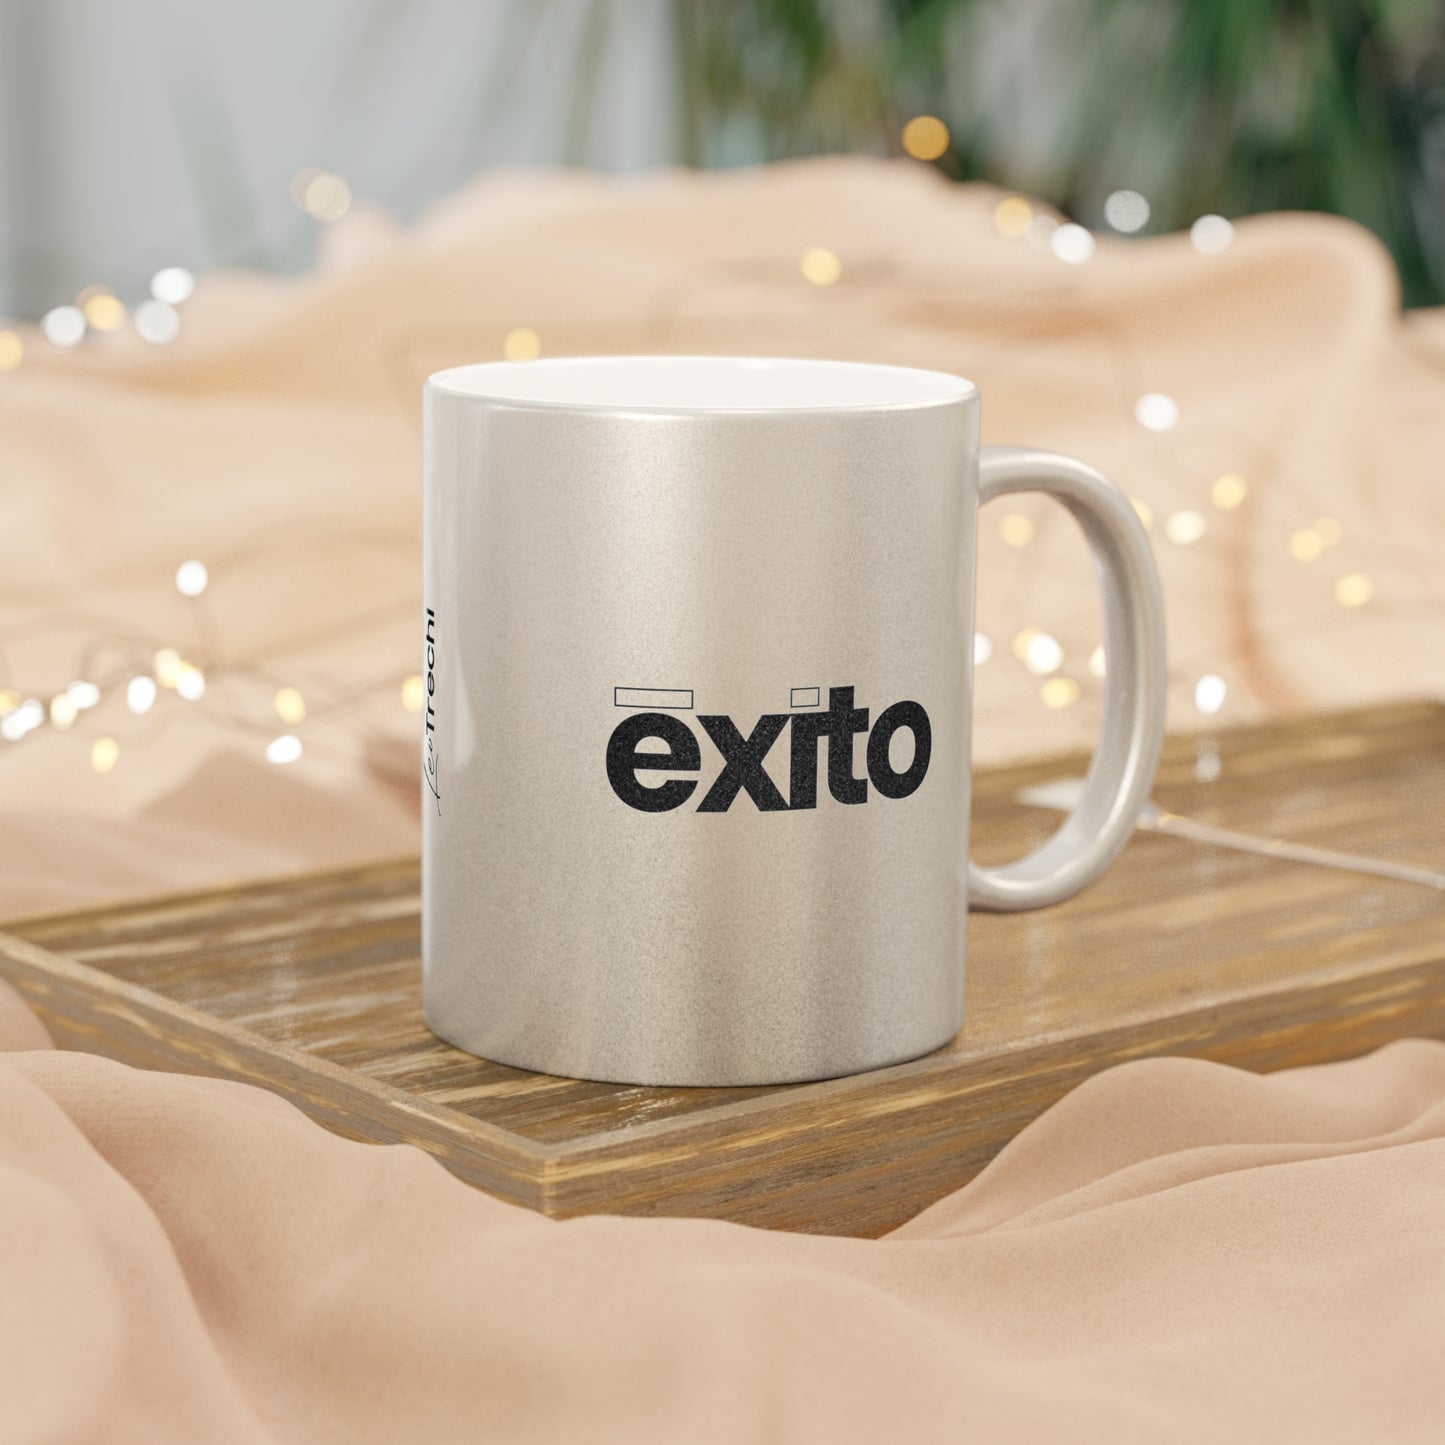 exito - Metallic Mug (Silver\Gold)